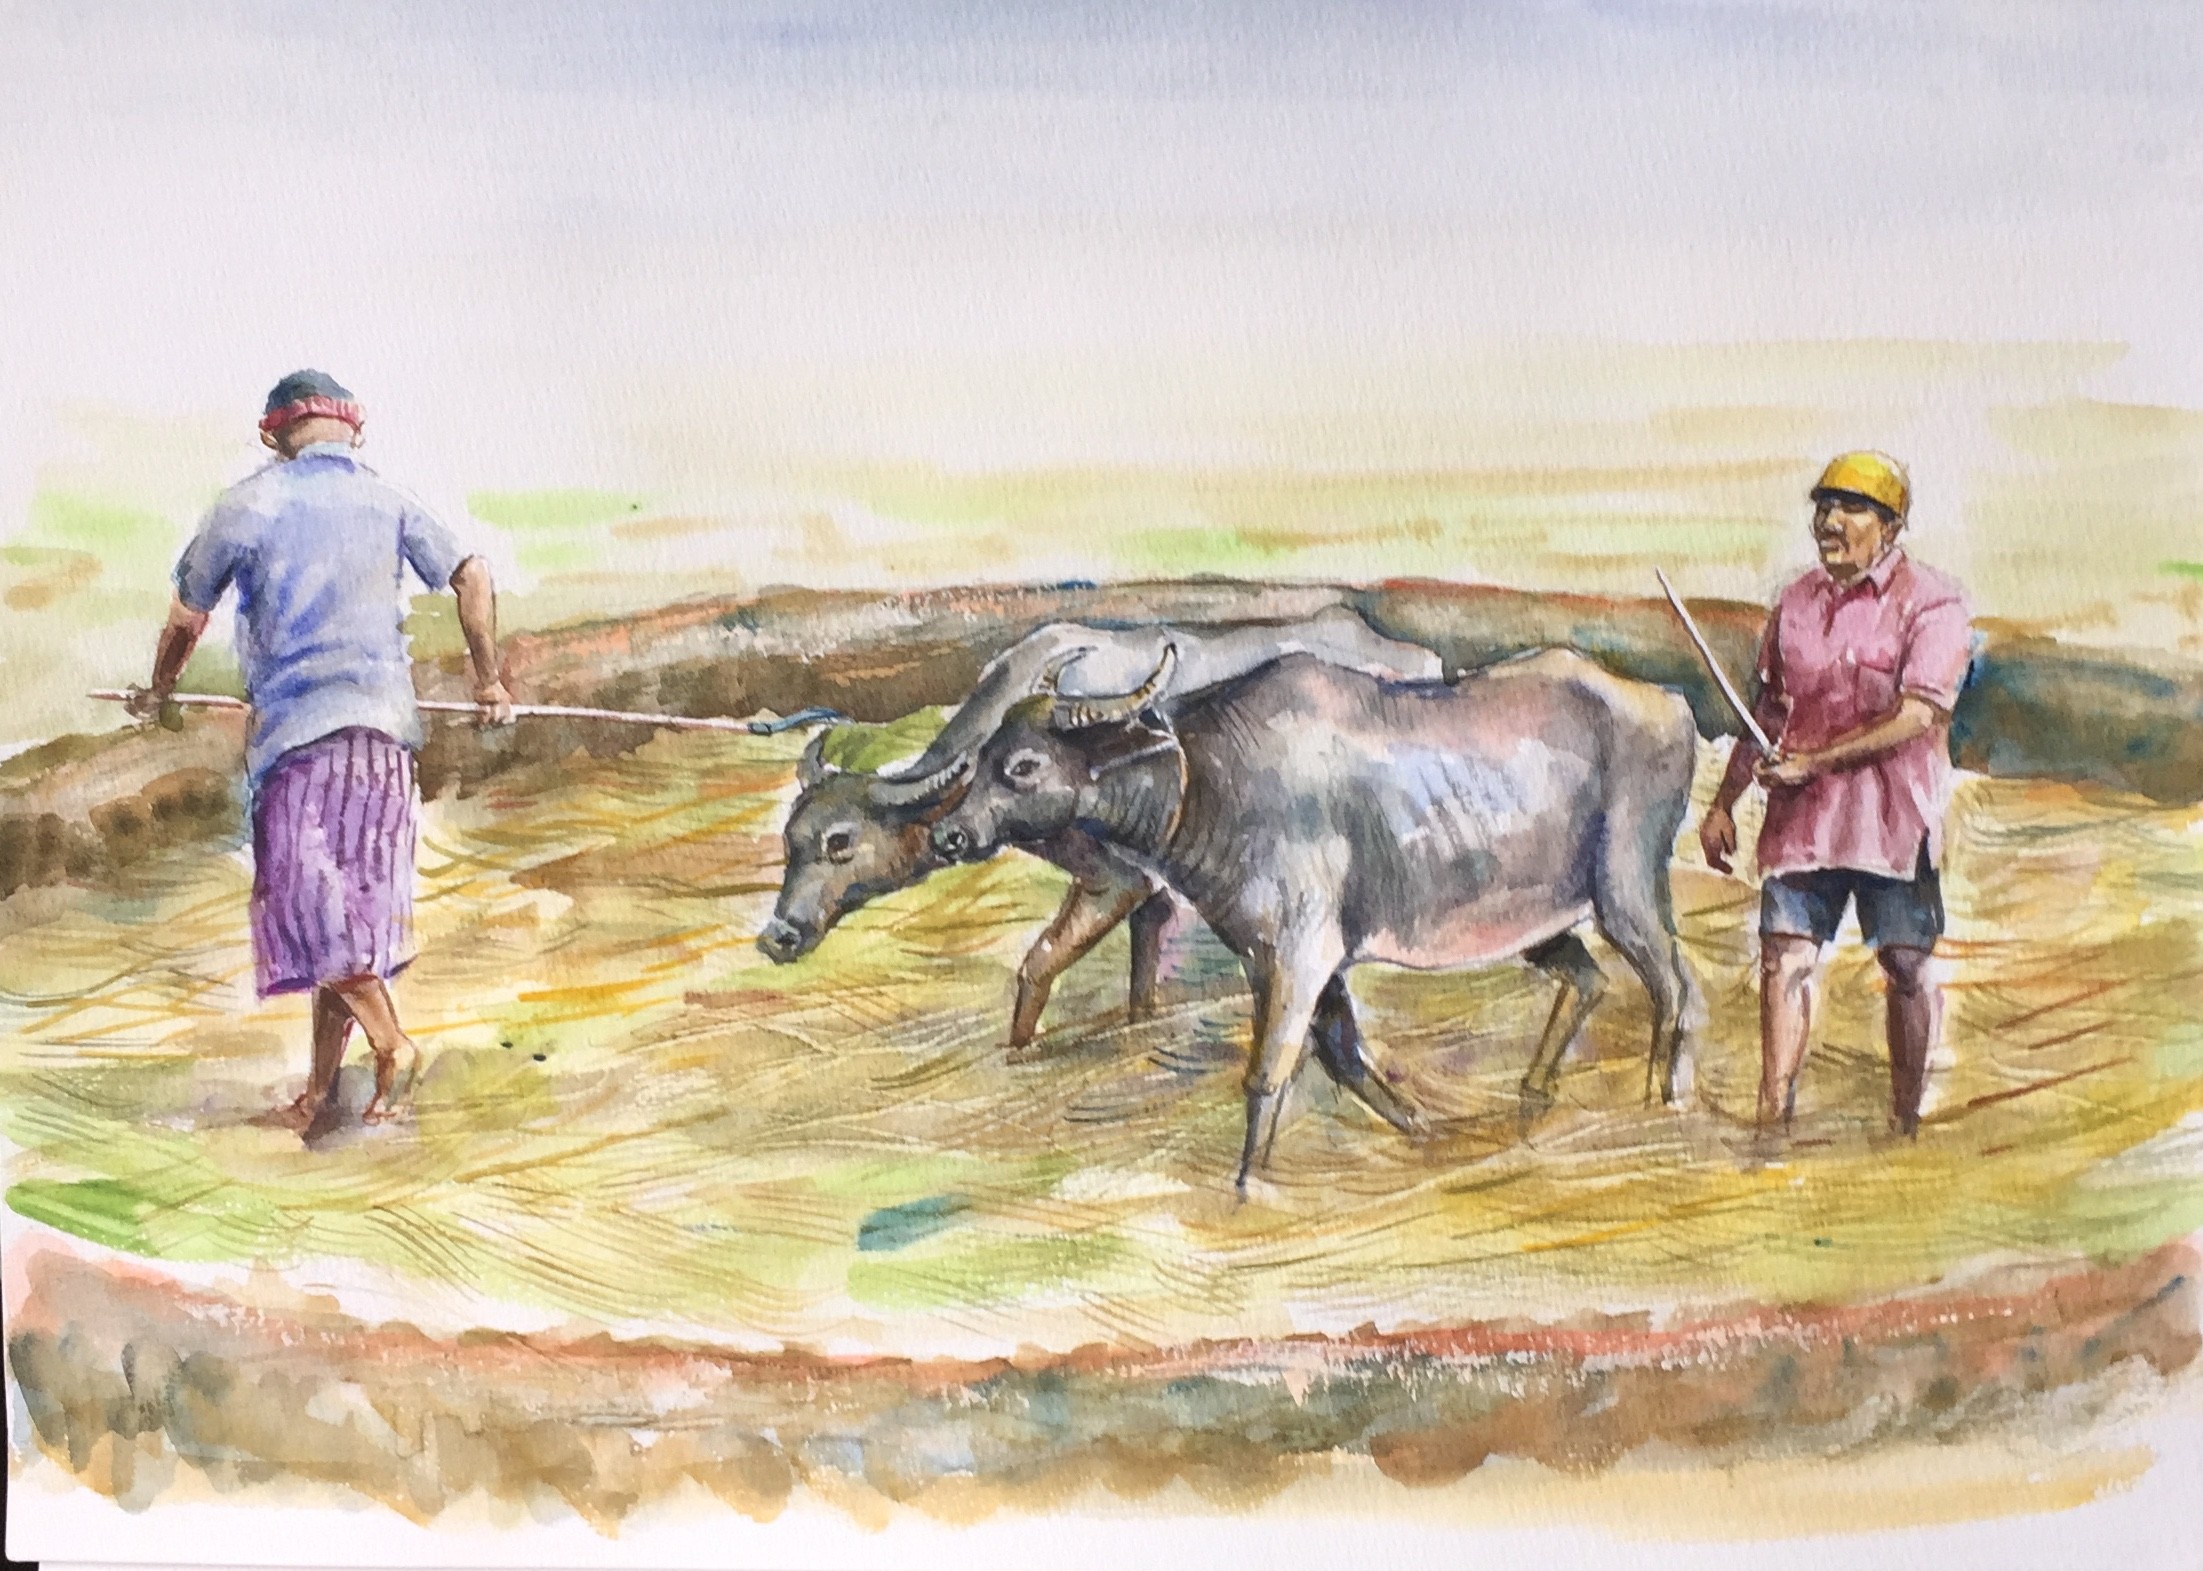 Paddy field by Sarath Karunagama